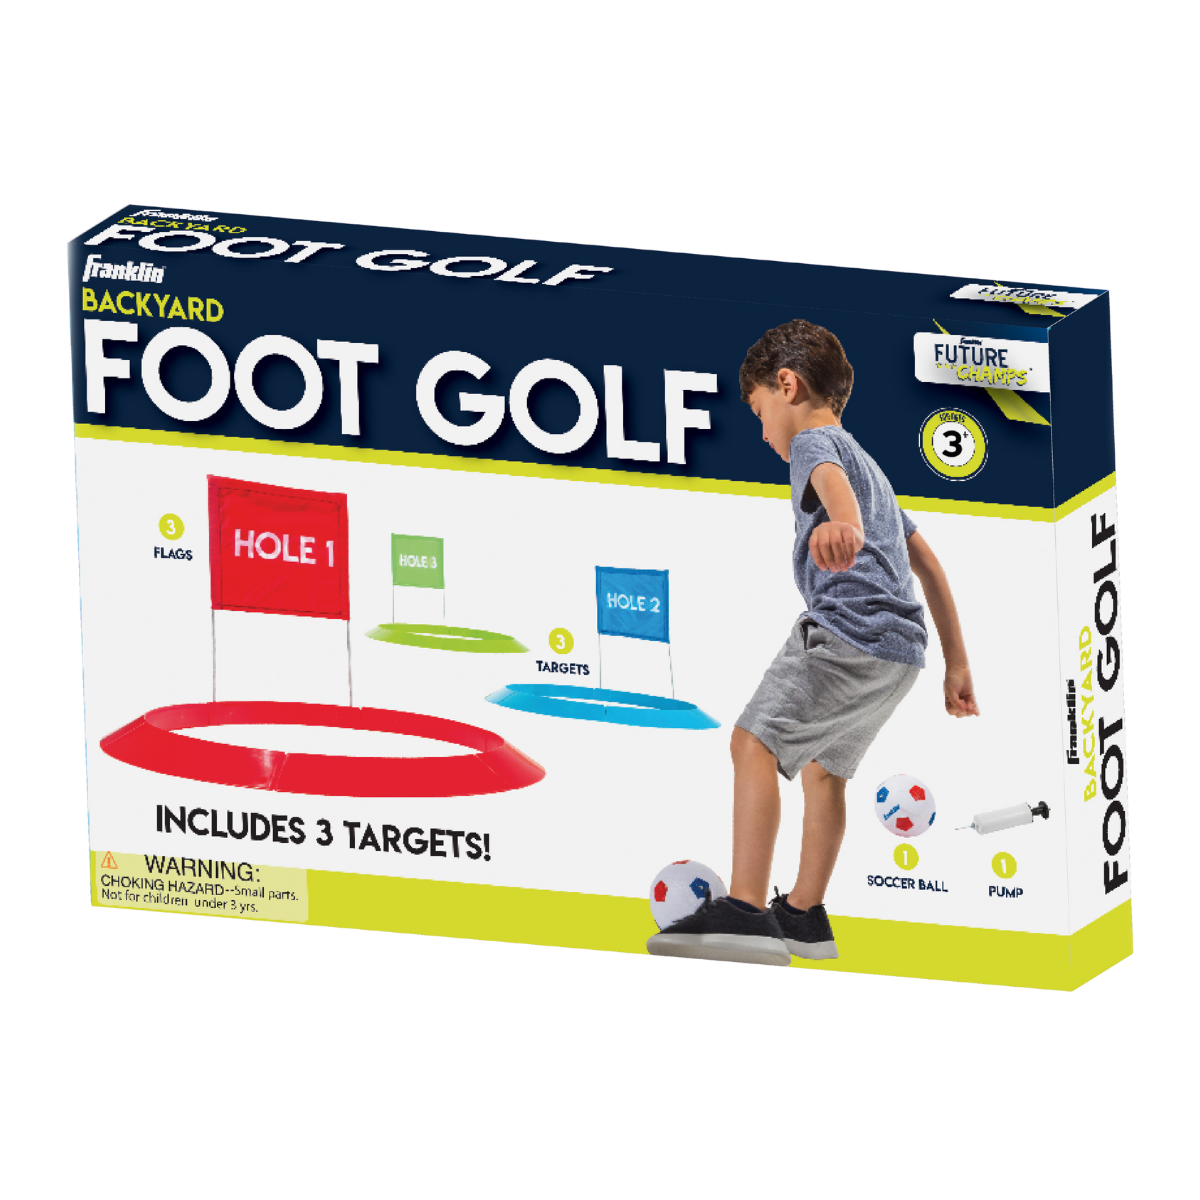 Backyard Foot-Golf Set